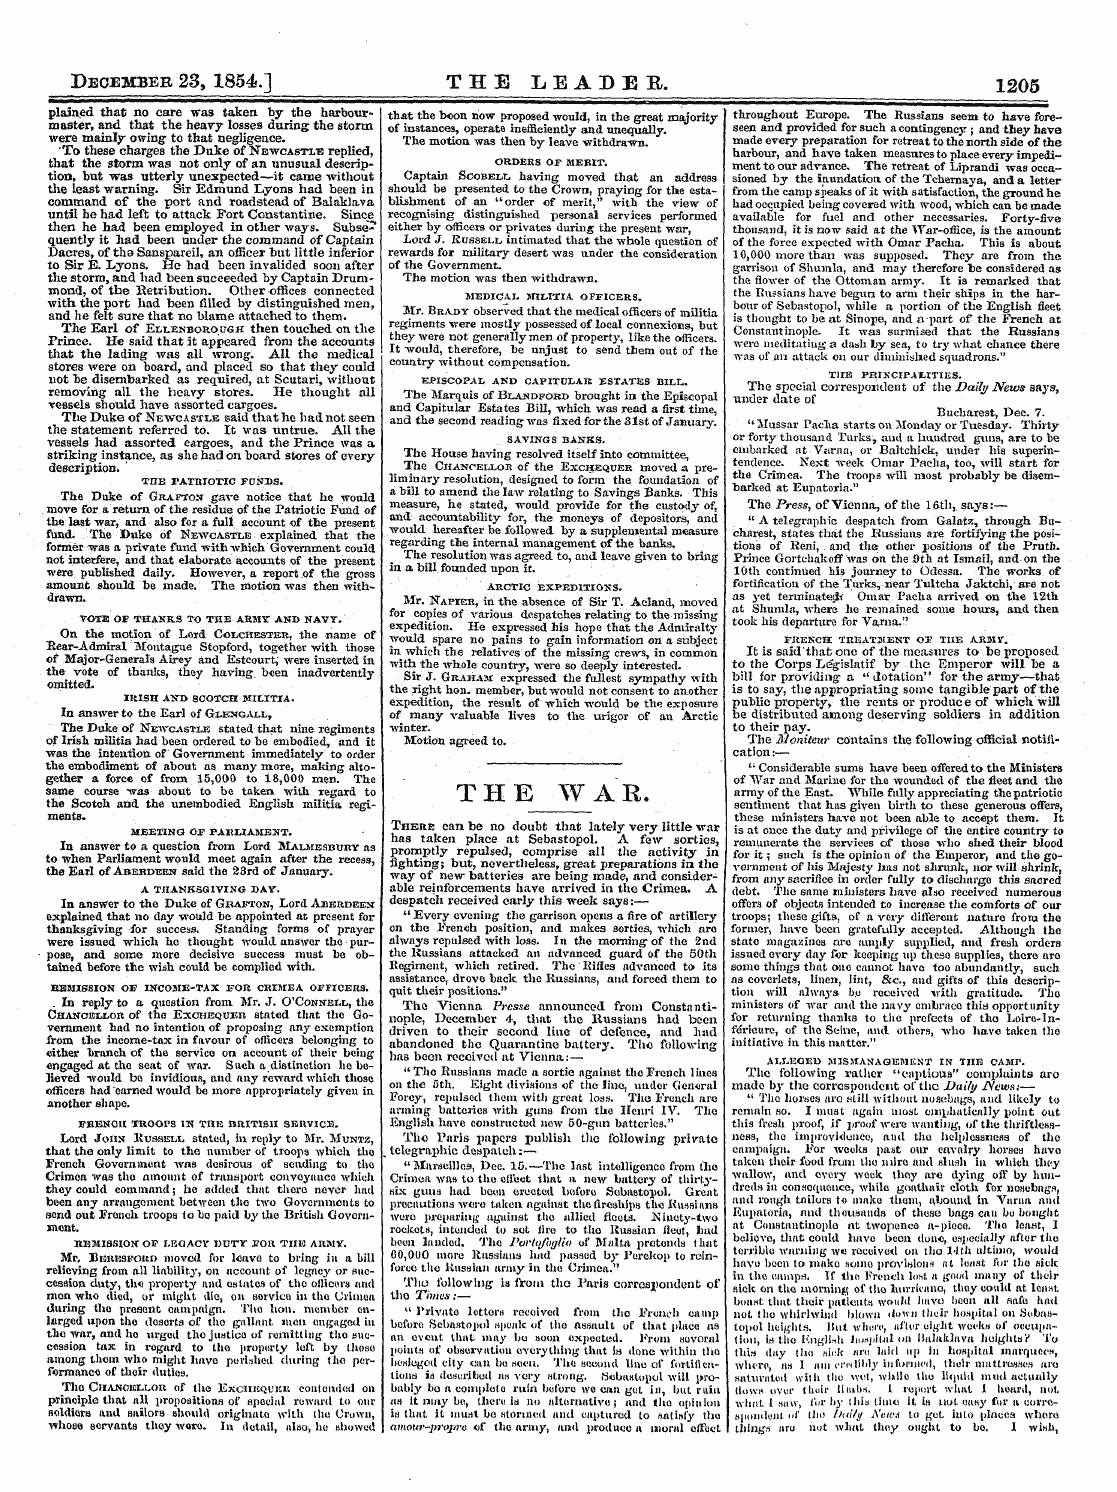 Leader (1850-1860): jS F Y, 2nd edition - December 23, 1854.] The Leader. 1205